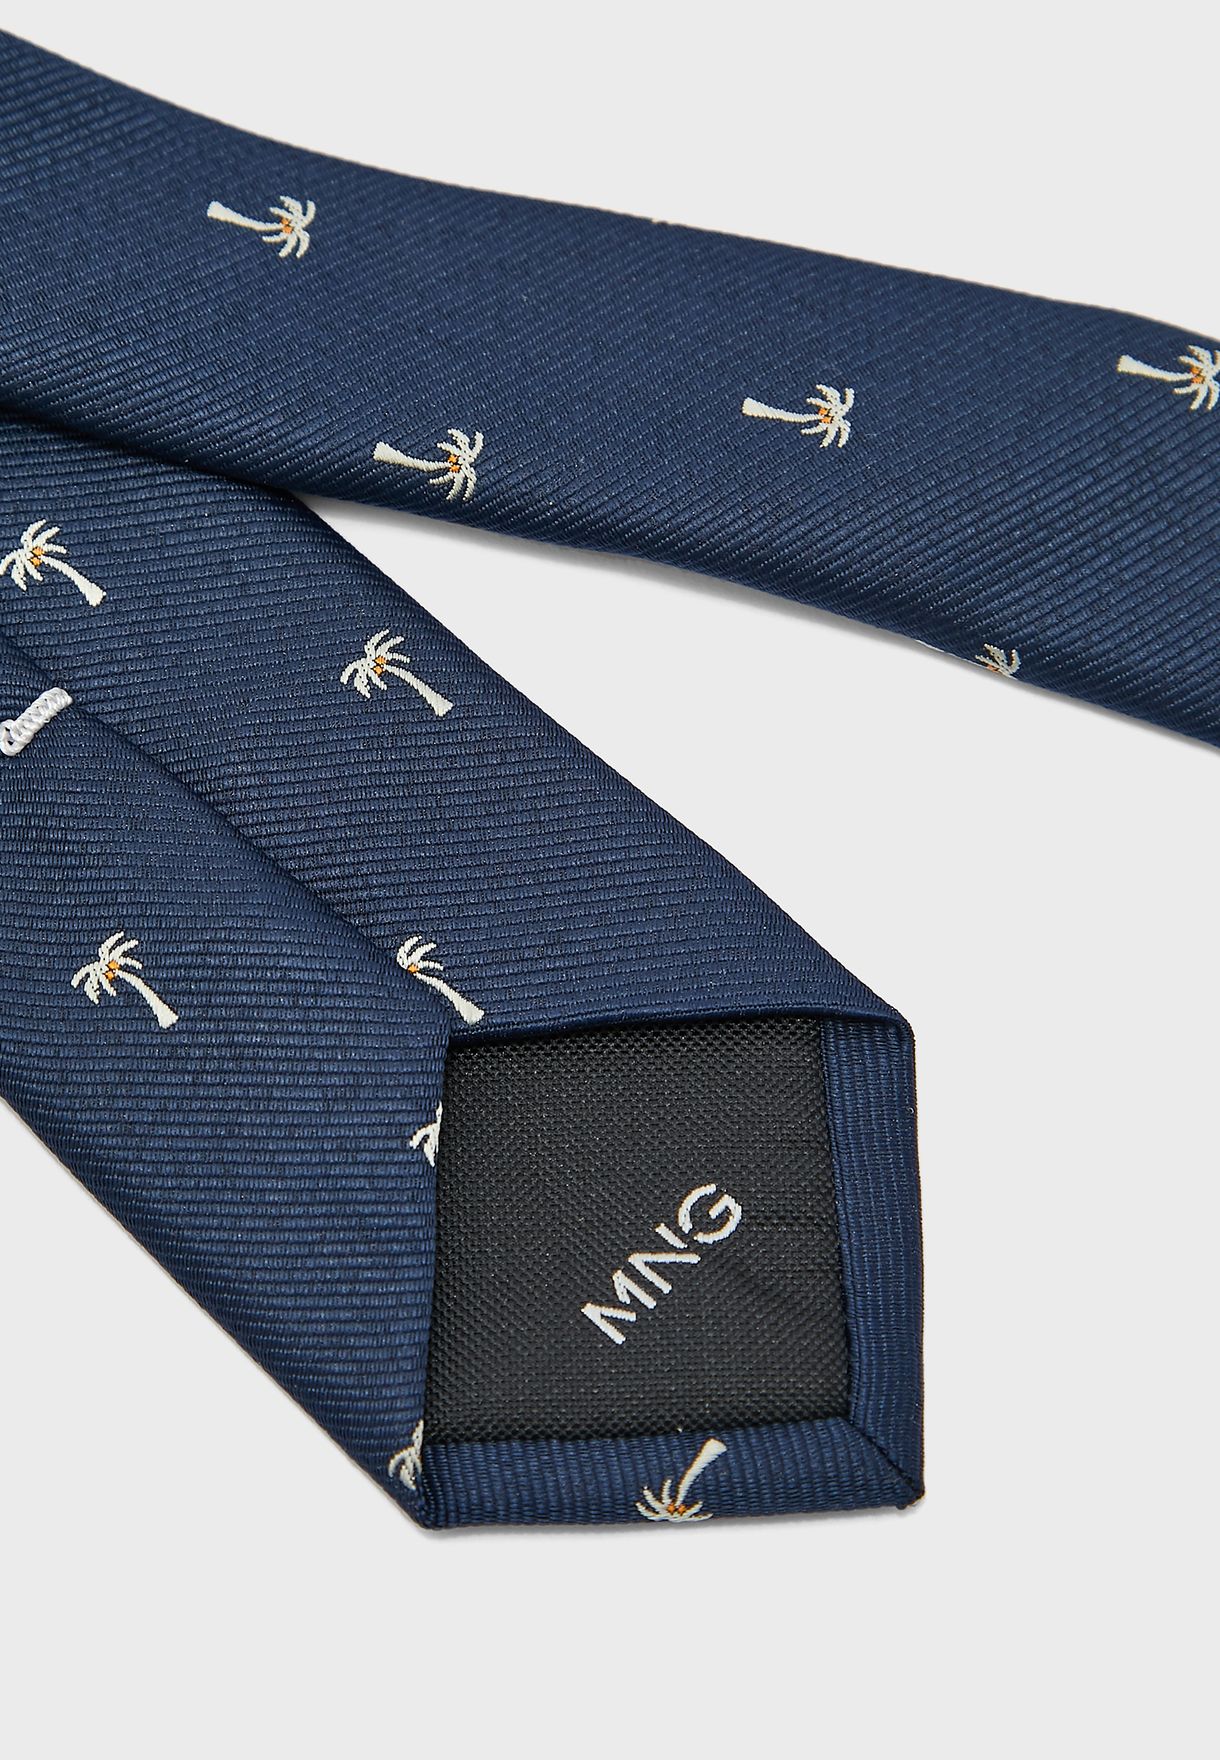 ربطة عنق بطبعات نخيل